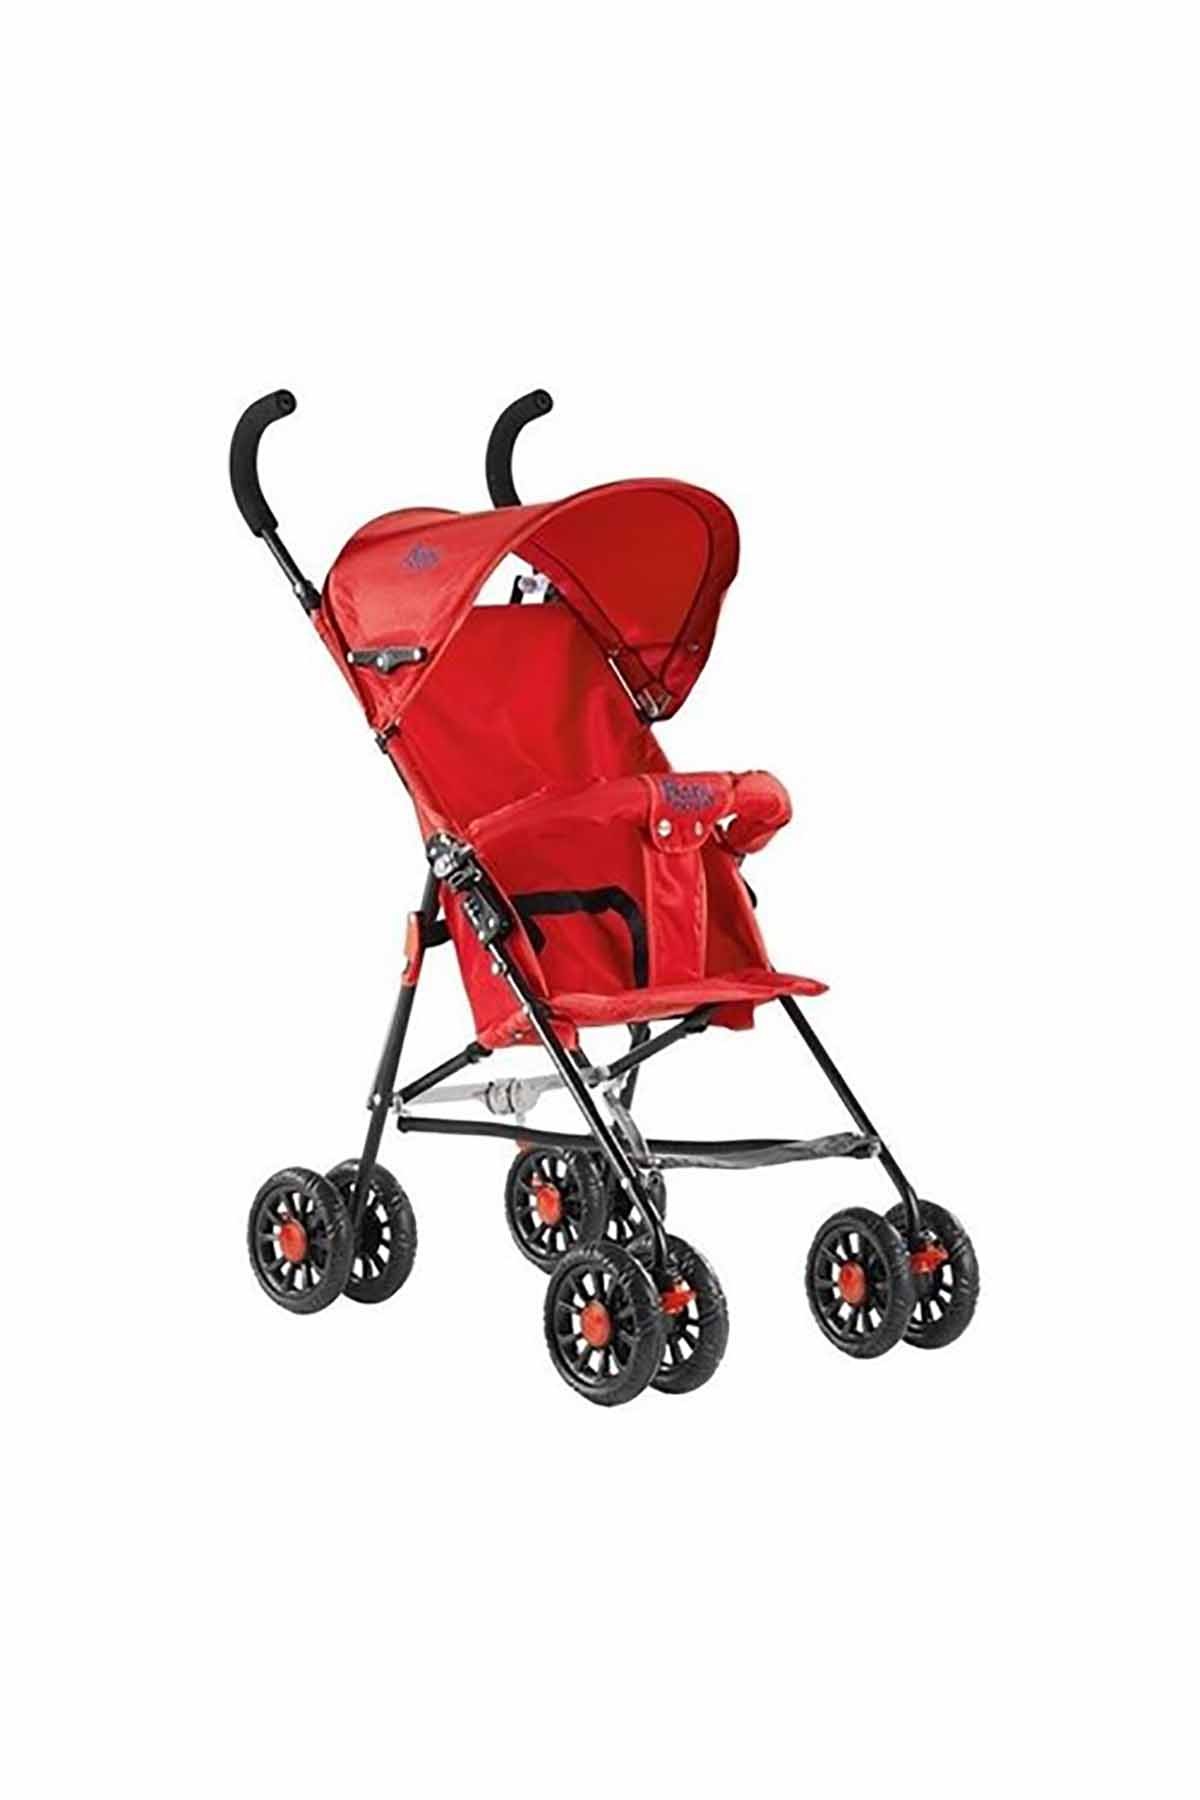 Babyhope SC107 Baston Bebek Arabası Kırmızı